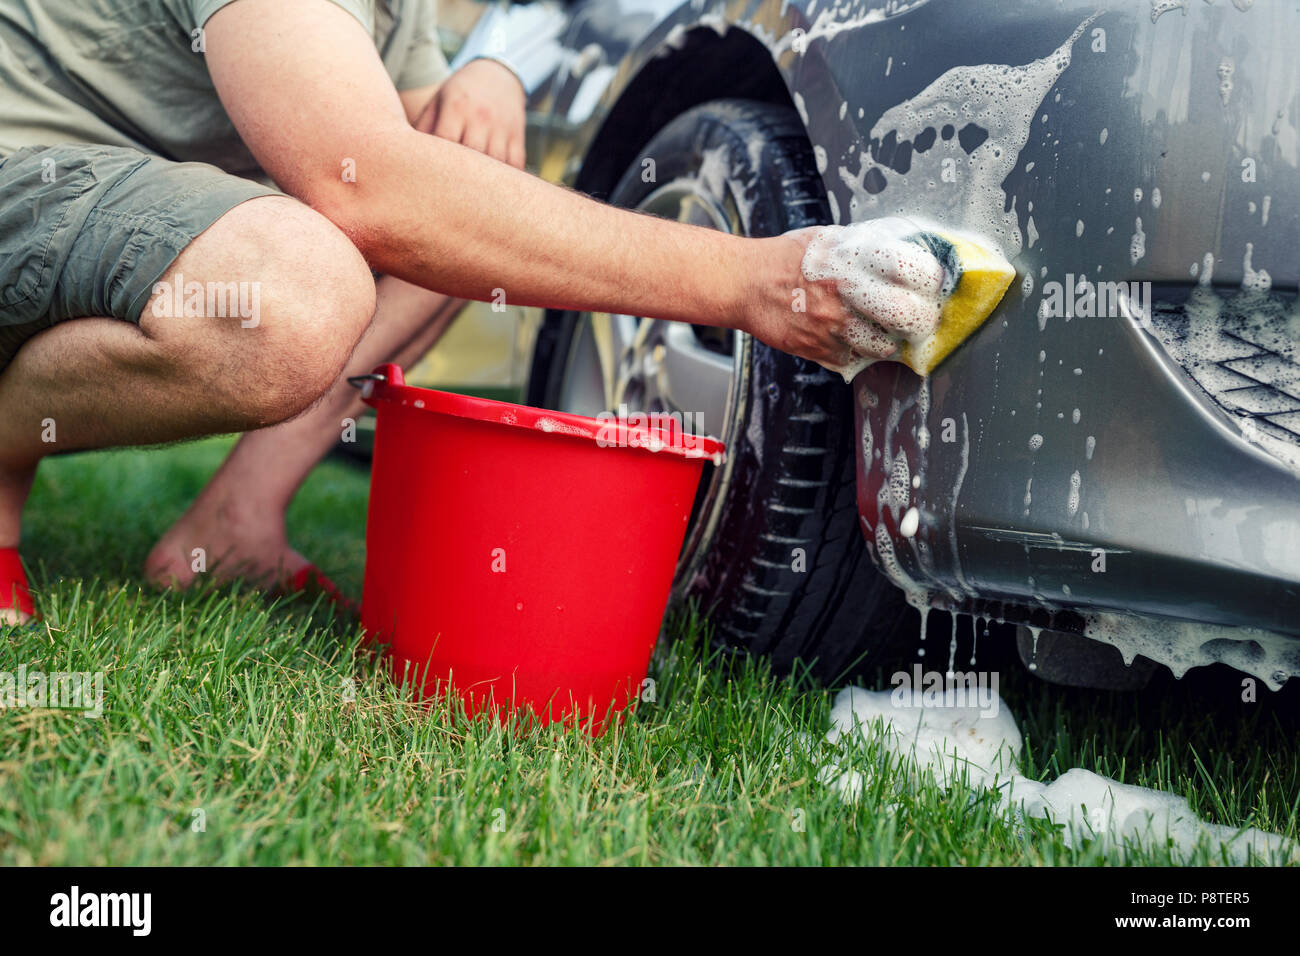 Schwamm und Eimer - junge Männer sein Auto waschen Stockfotografie - Alamy